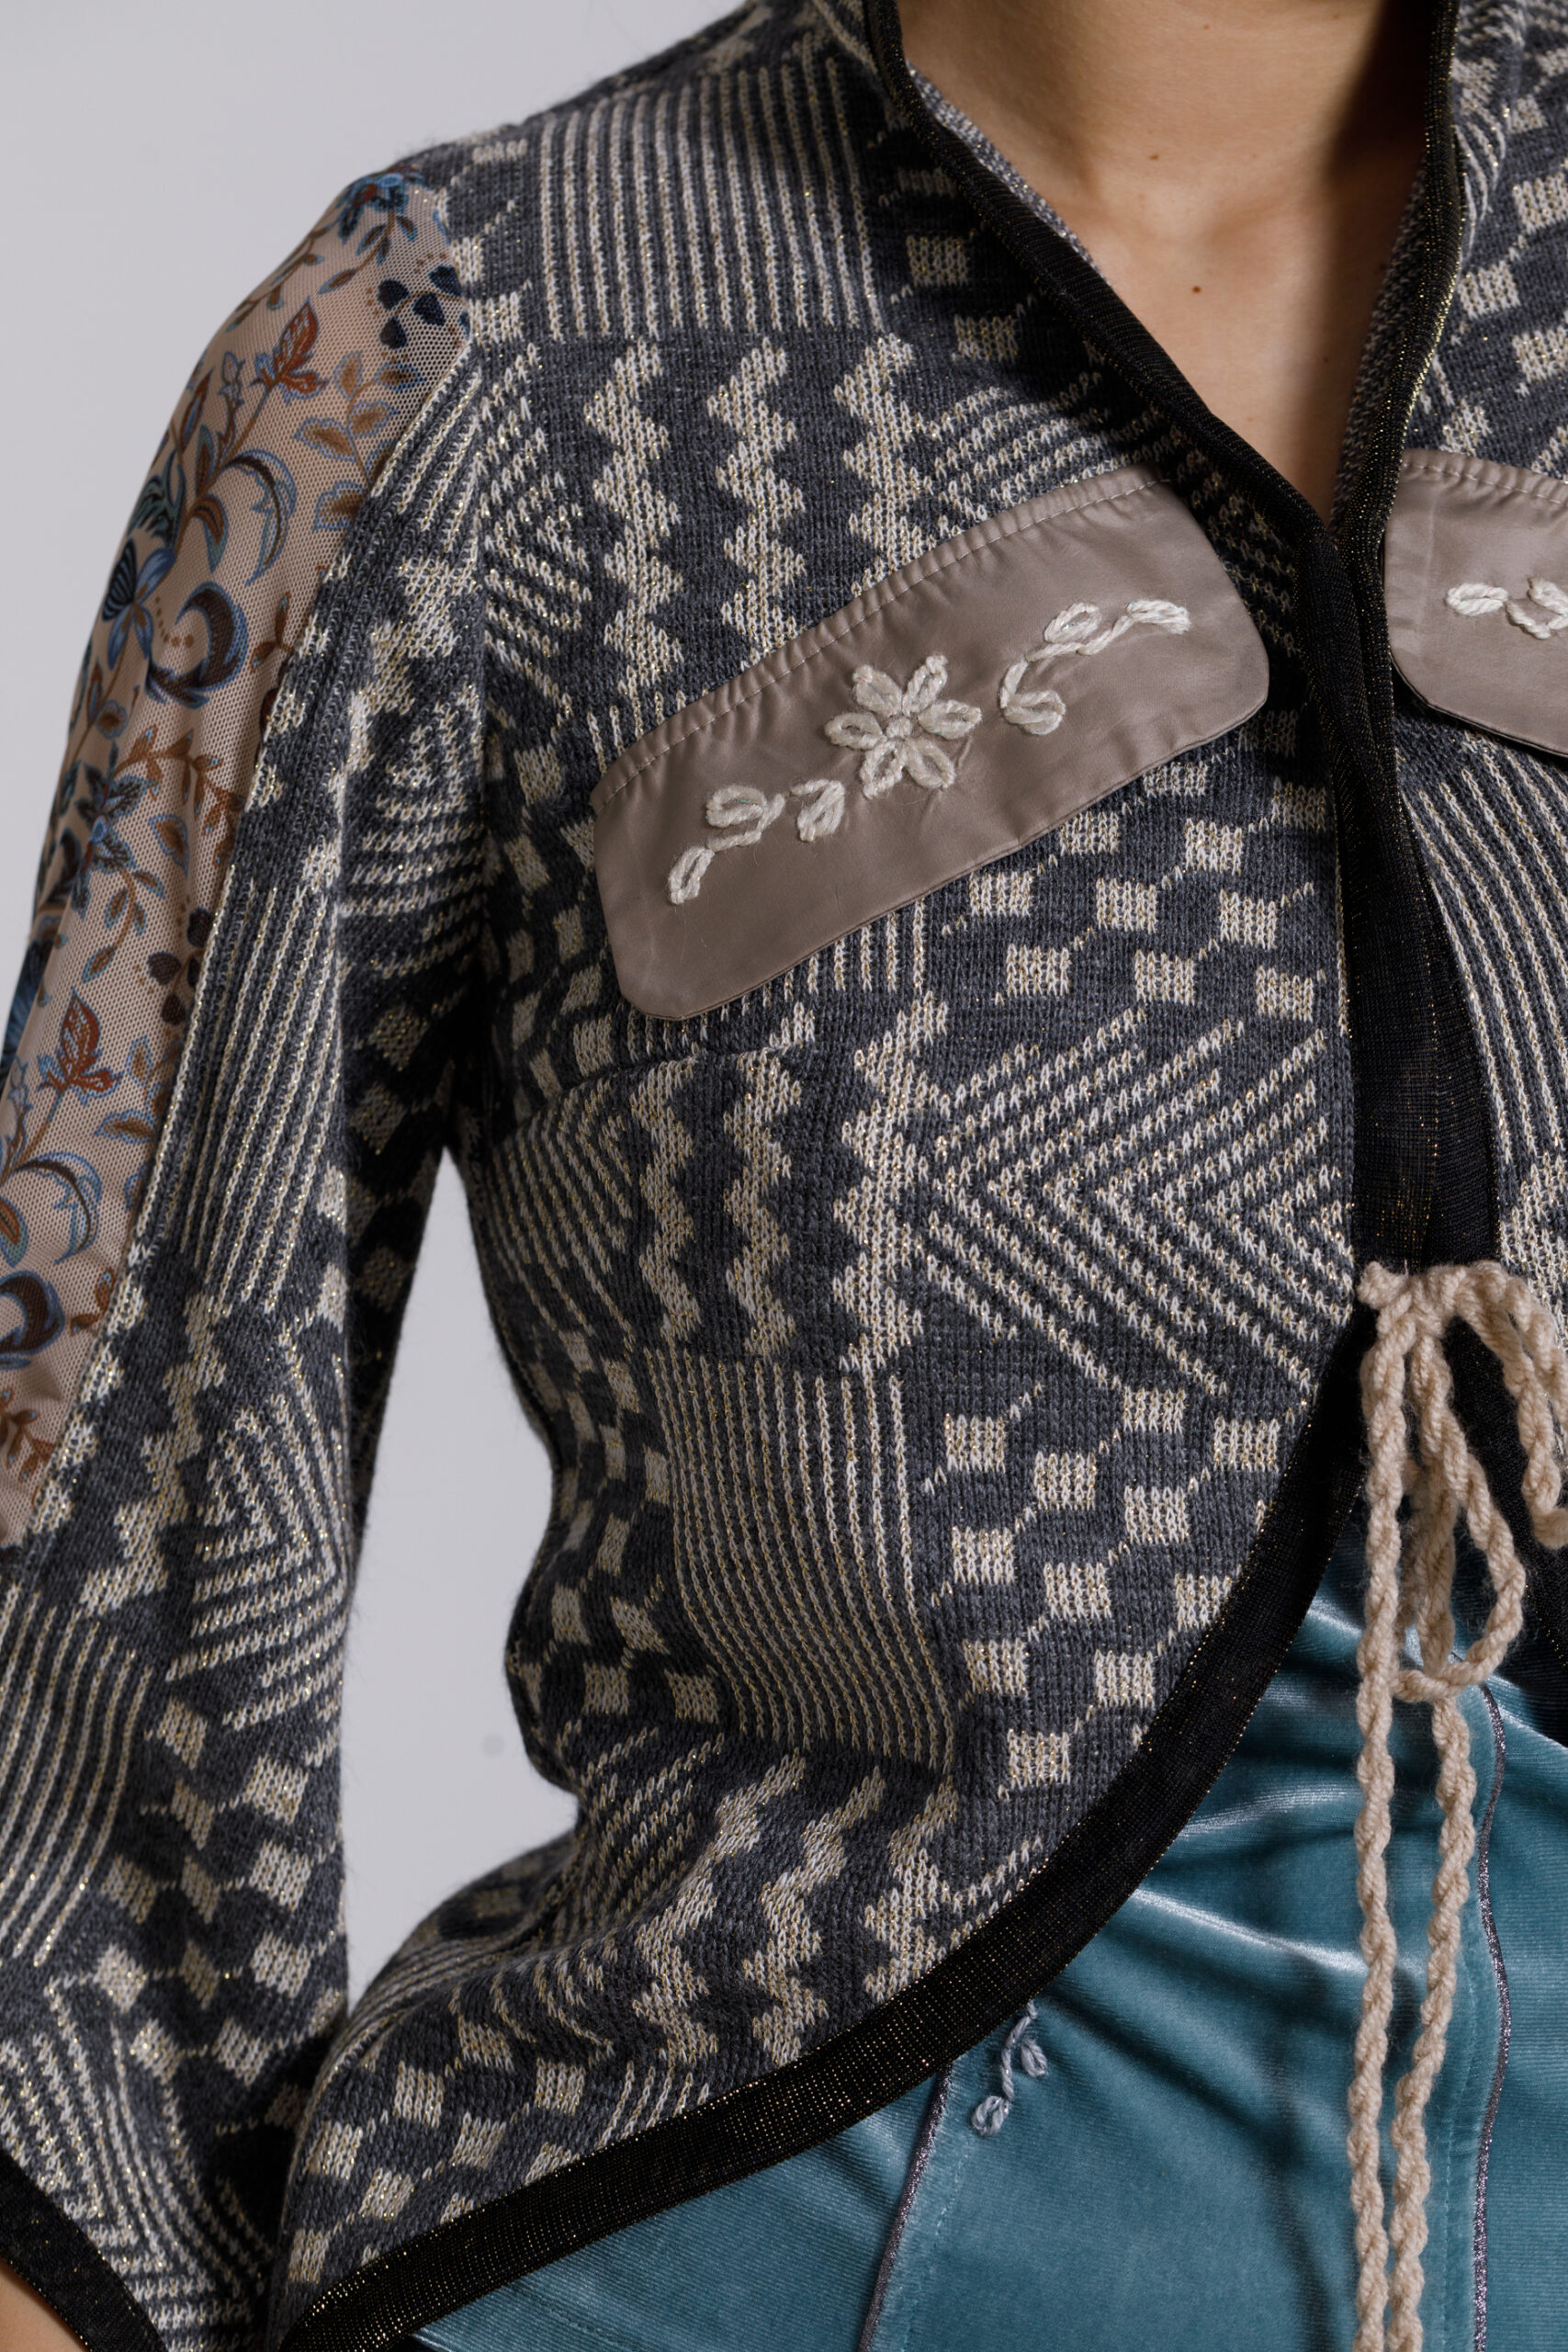 Jacheta OSIRIS cu motive geometrice tricot gri. Materiale naturale, design unicat, cu broderie si aplicatii handmade